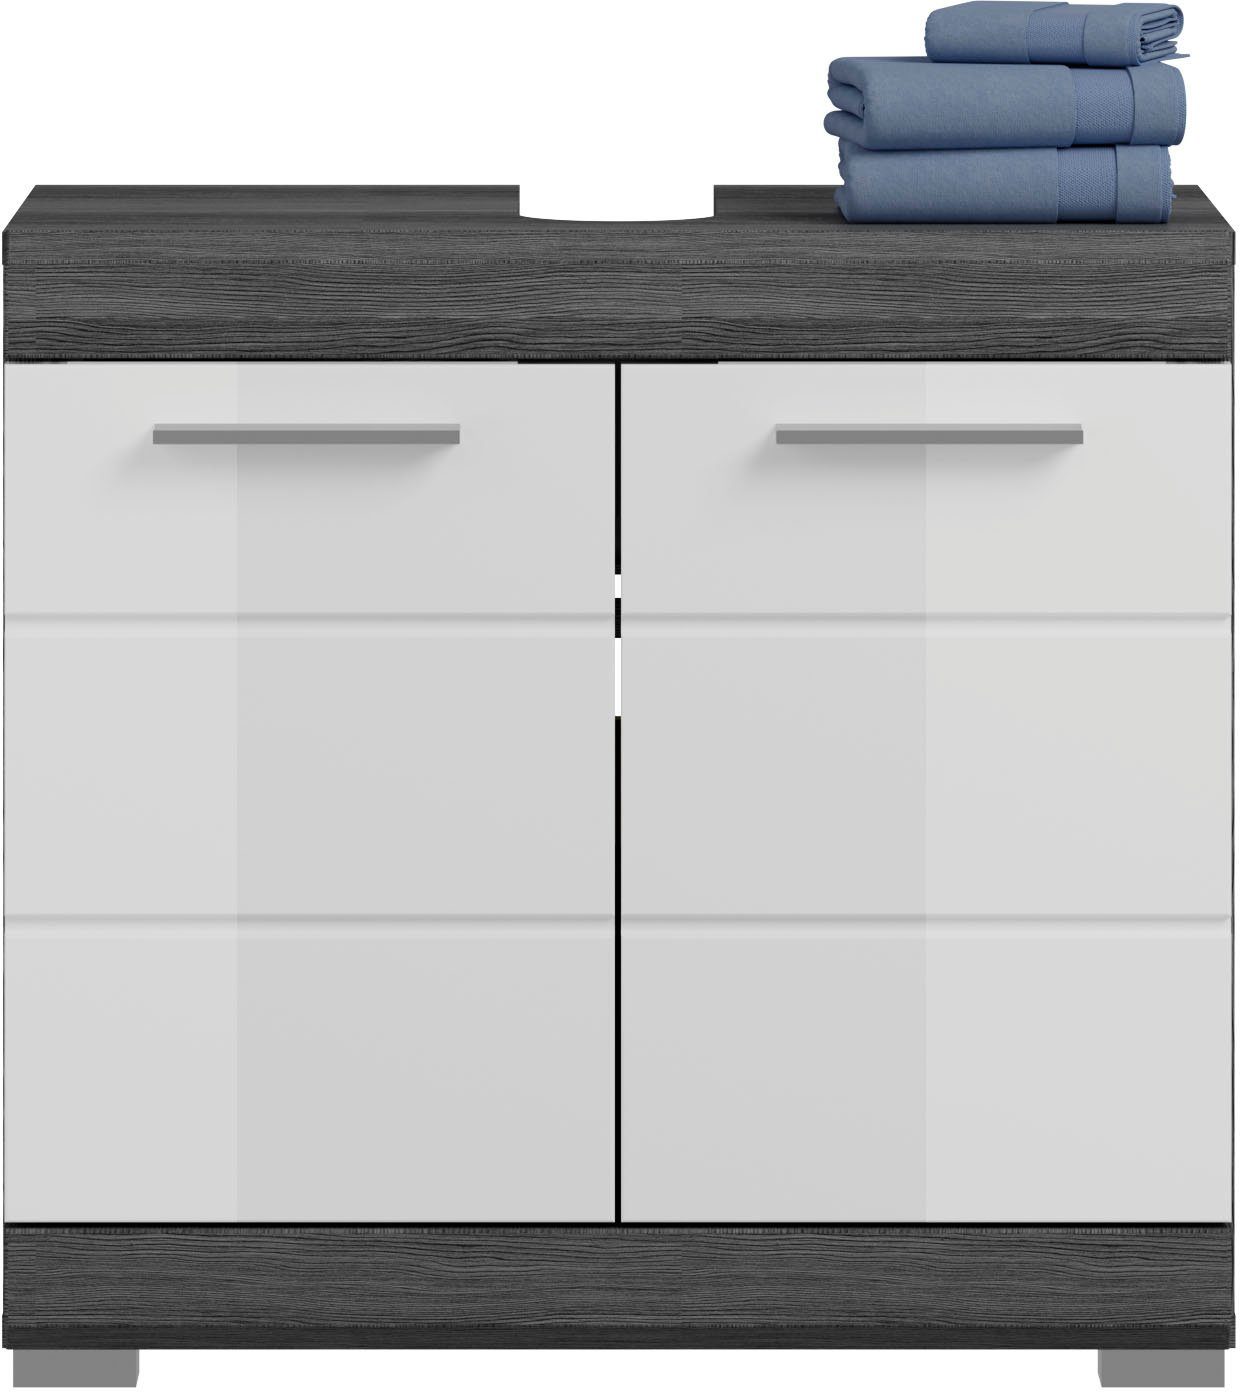 inosign wastafelonderkast siena badkamermeubels badkamerkast, 2 deuren, breedte 60 cm (1 stuk) grijs